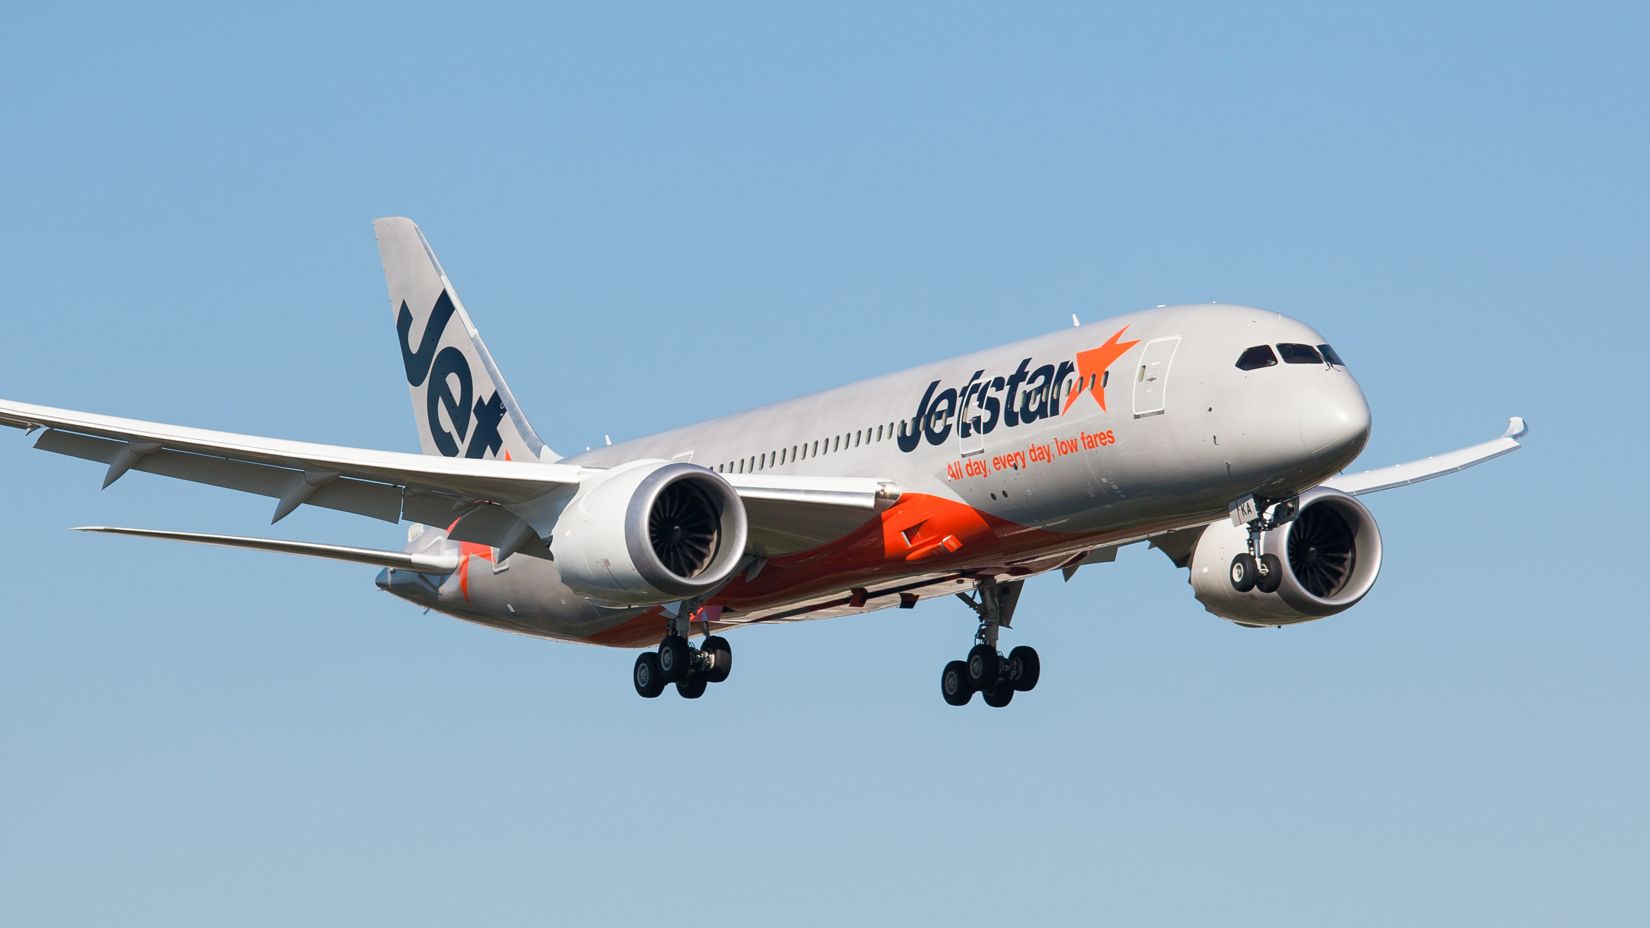 Jetstar 787 Dreamliner